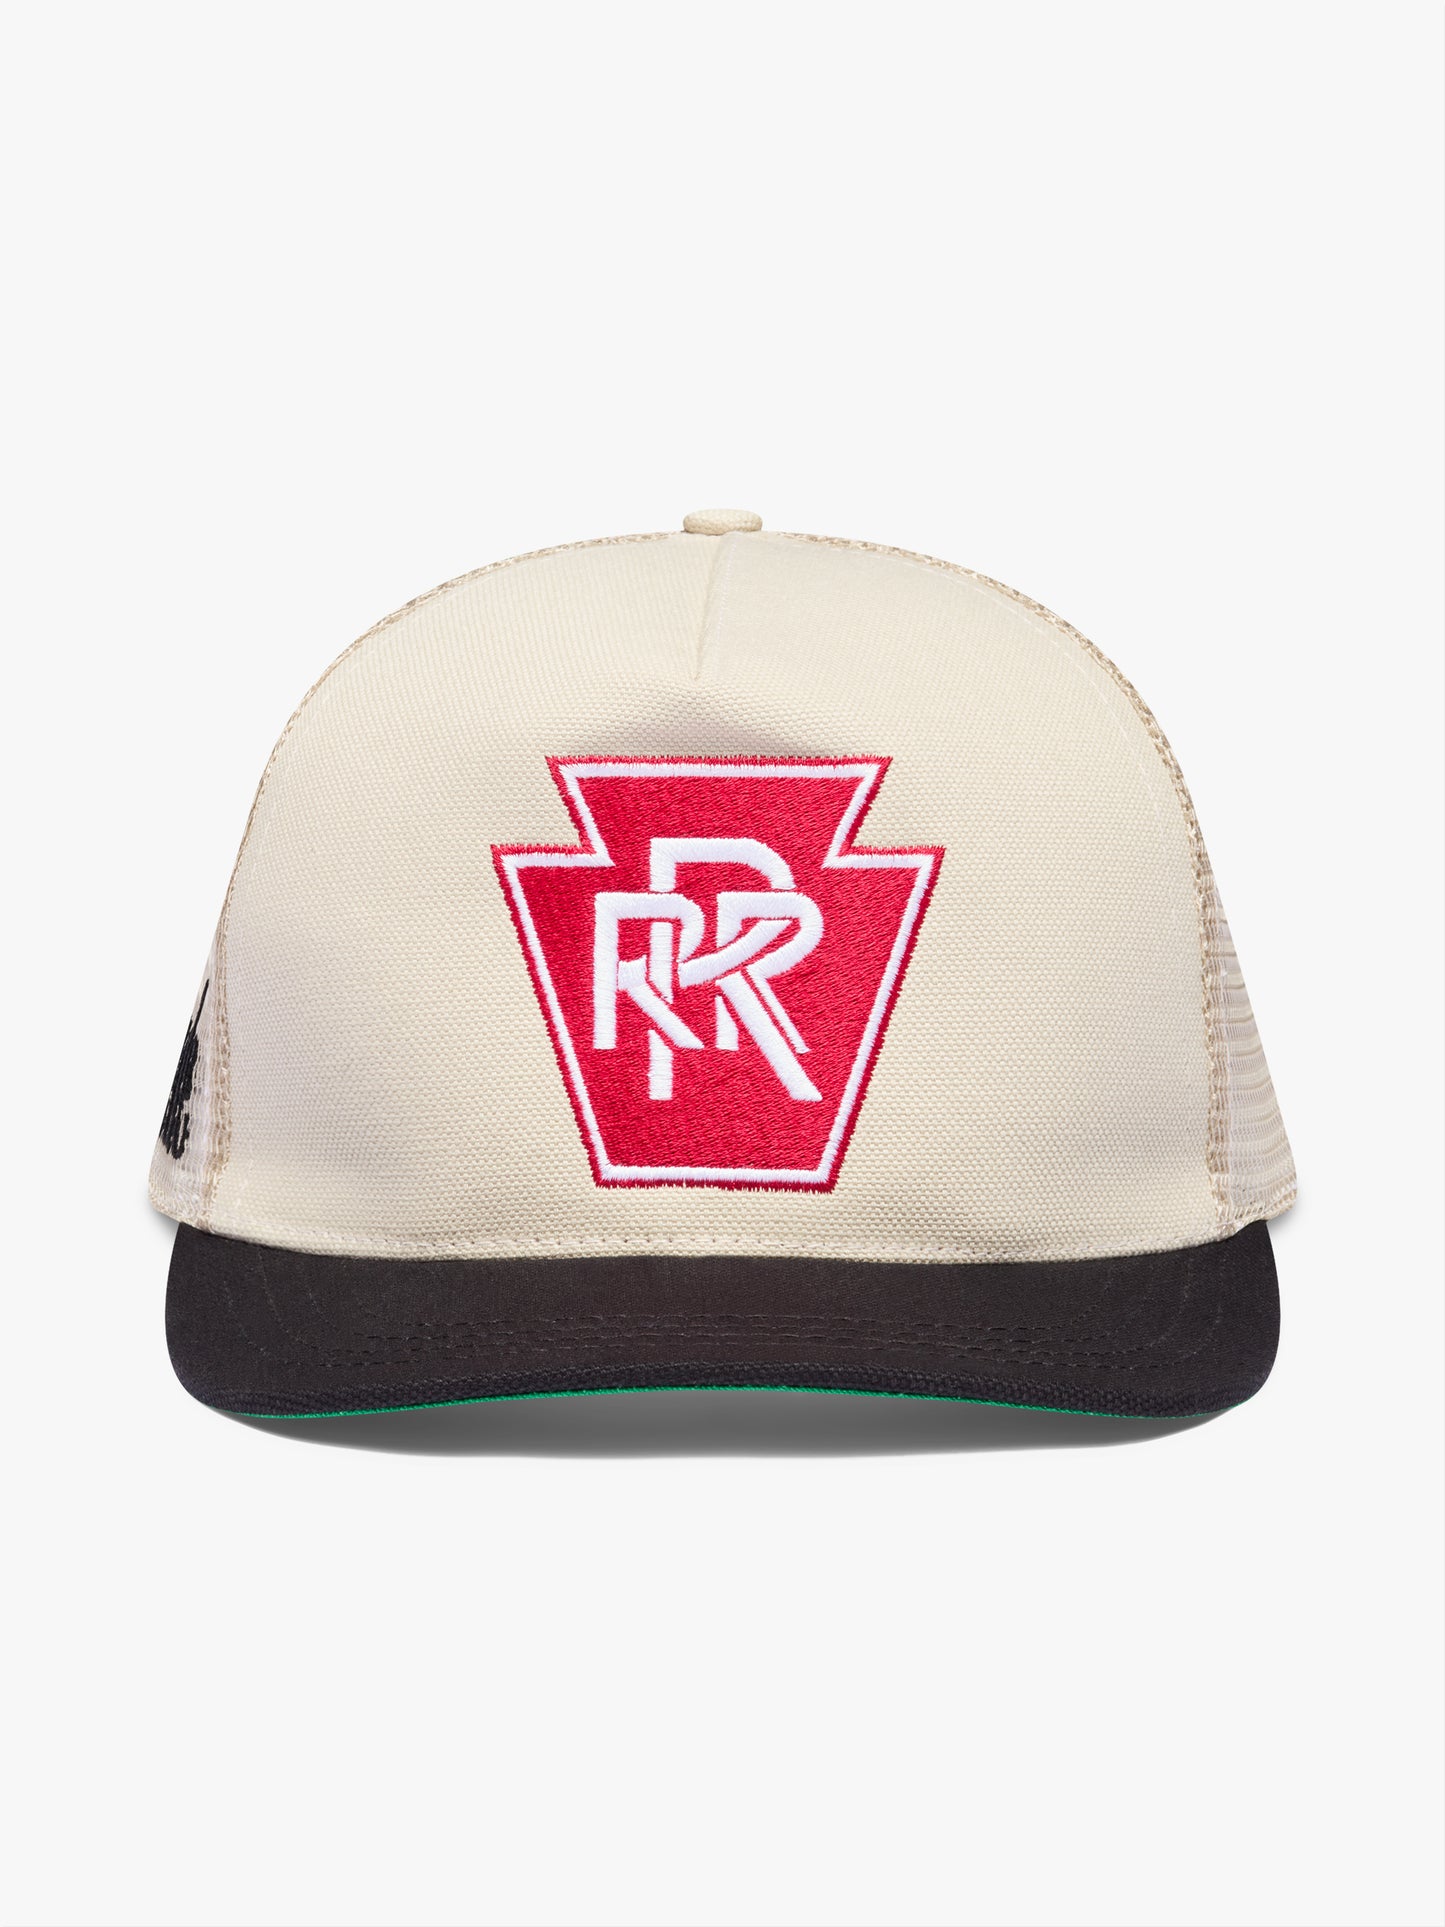 TRIPLE R TRUCKER HAT